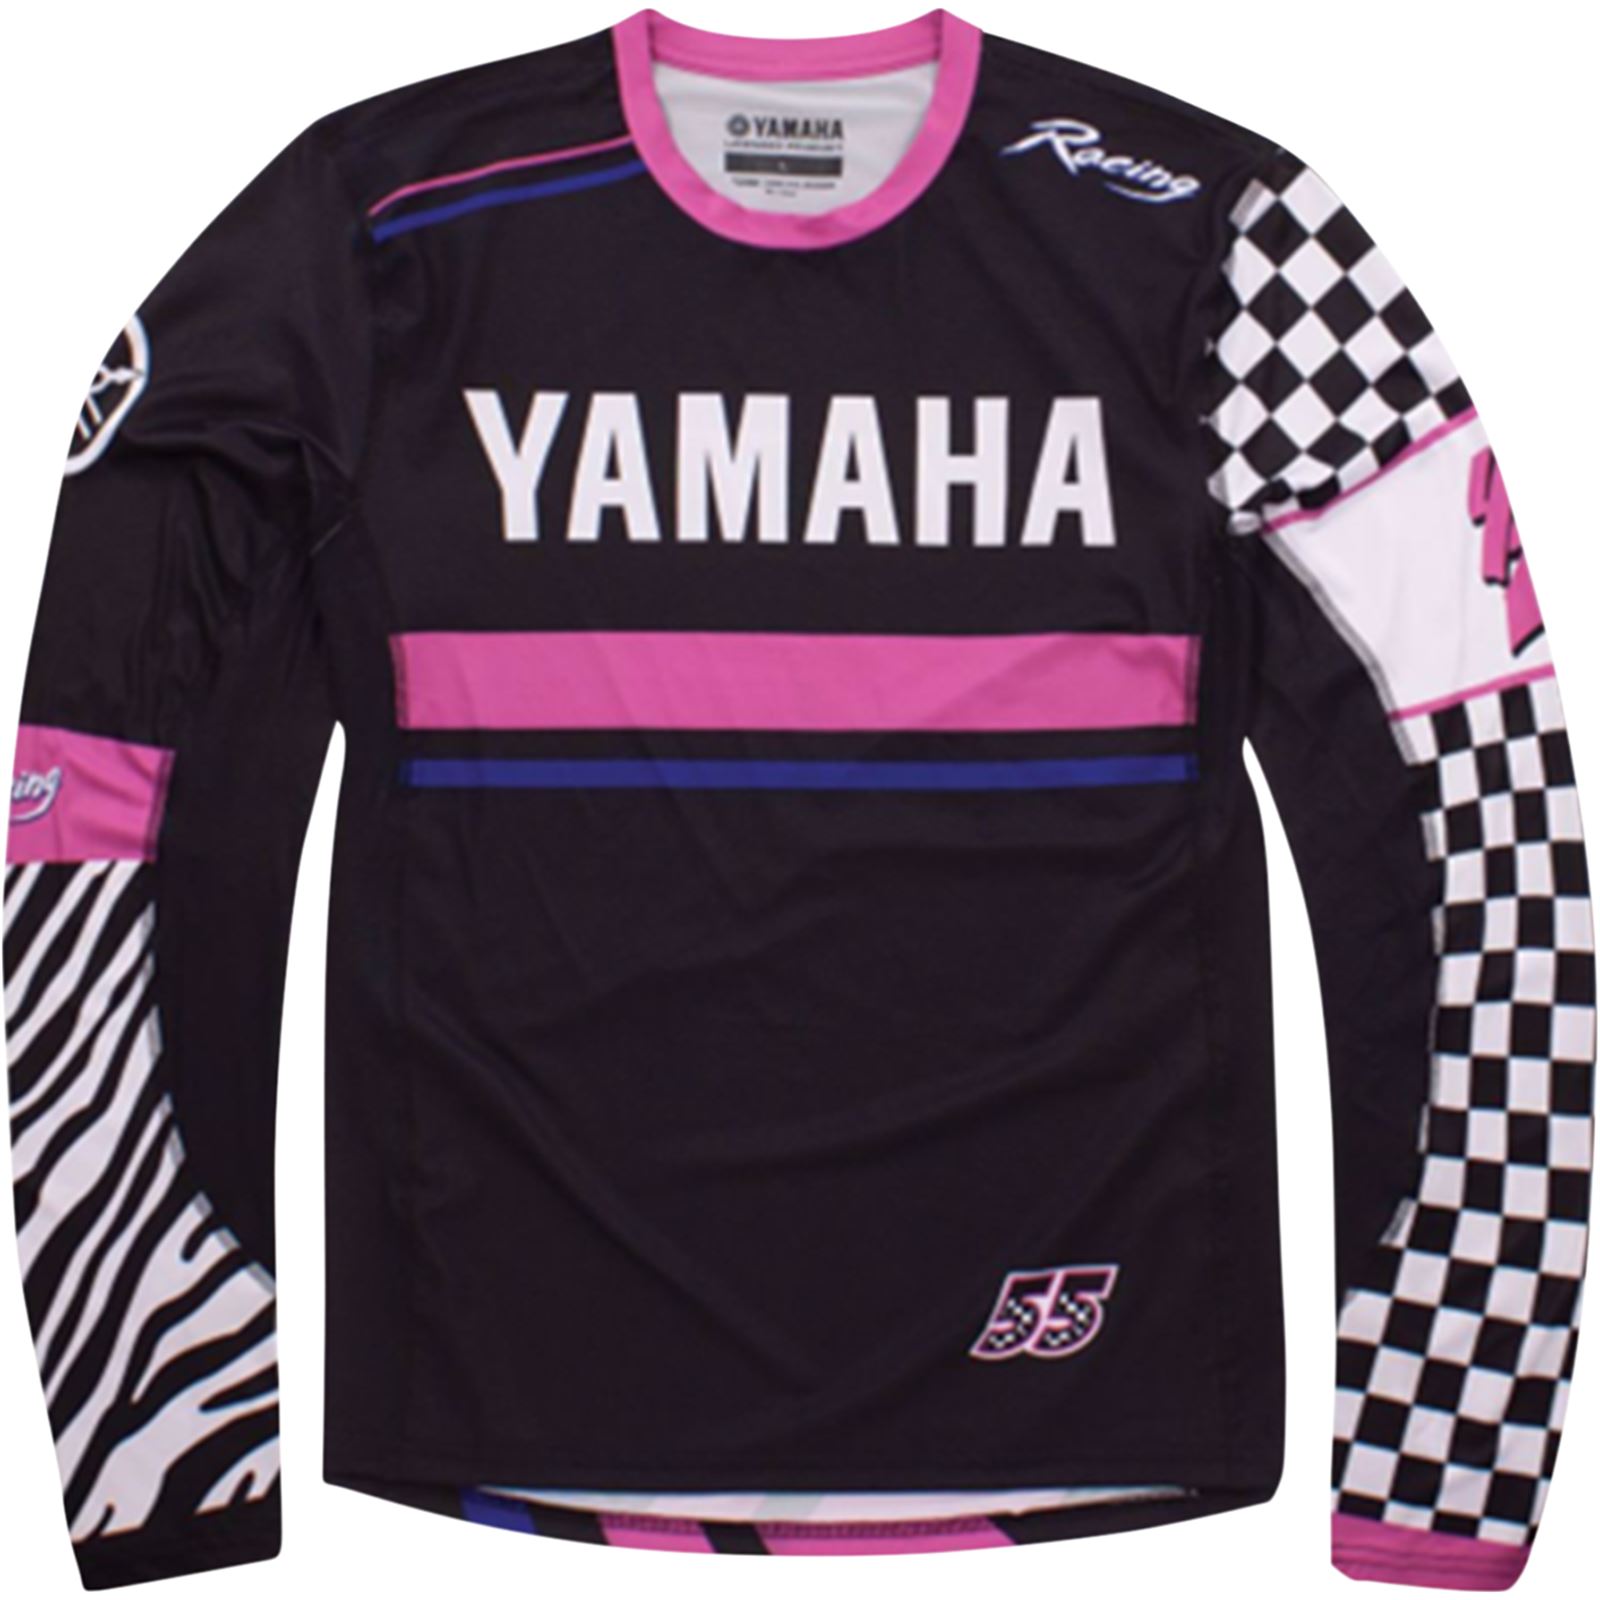 Yamaha Moto Long-Sleeve T-Shirt - Multi - Large